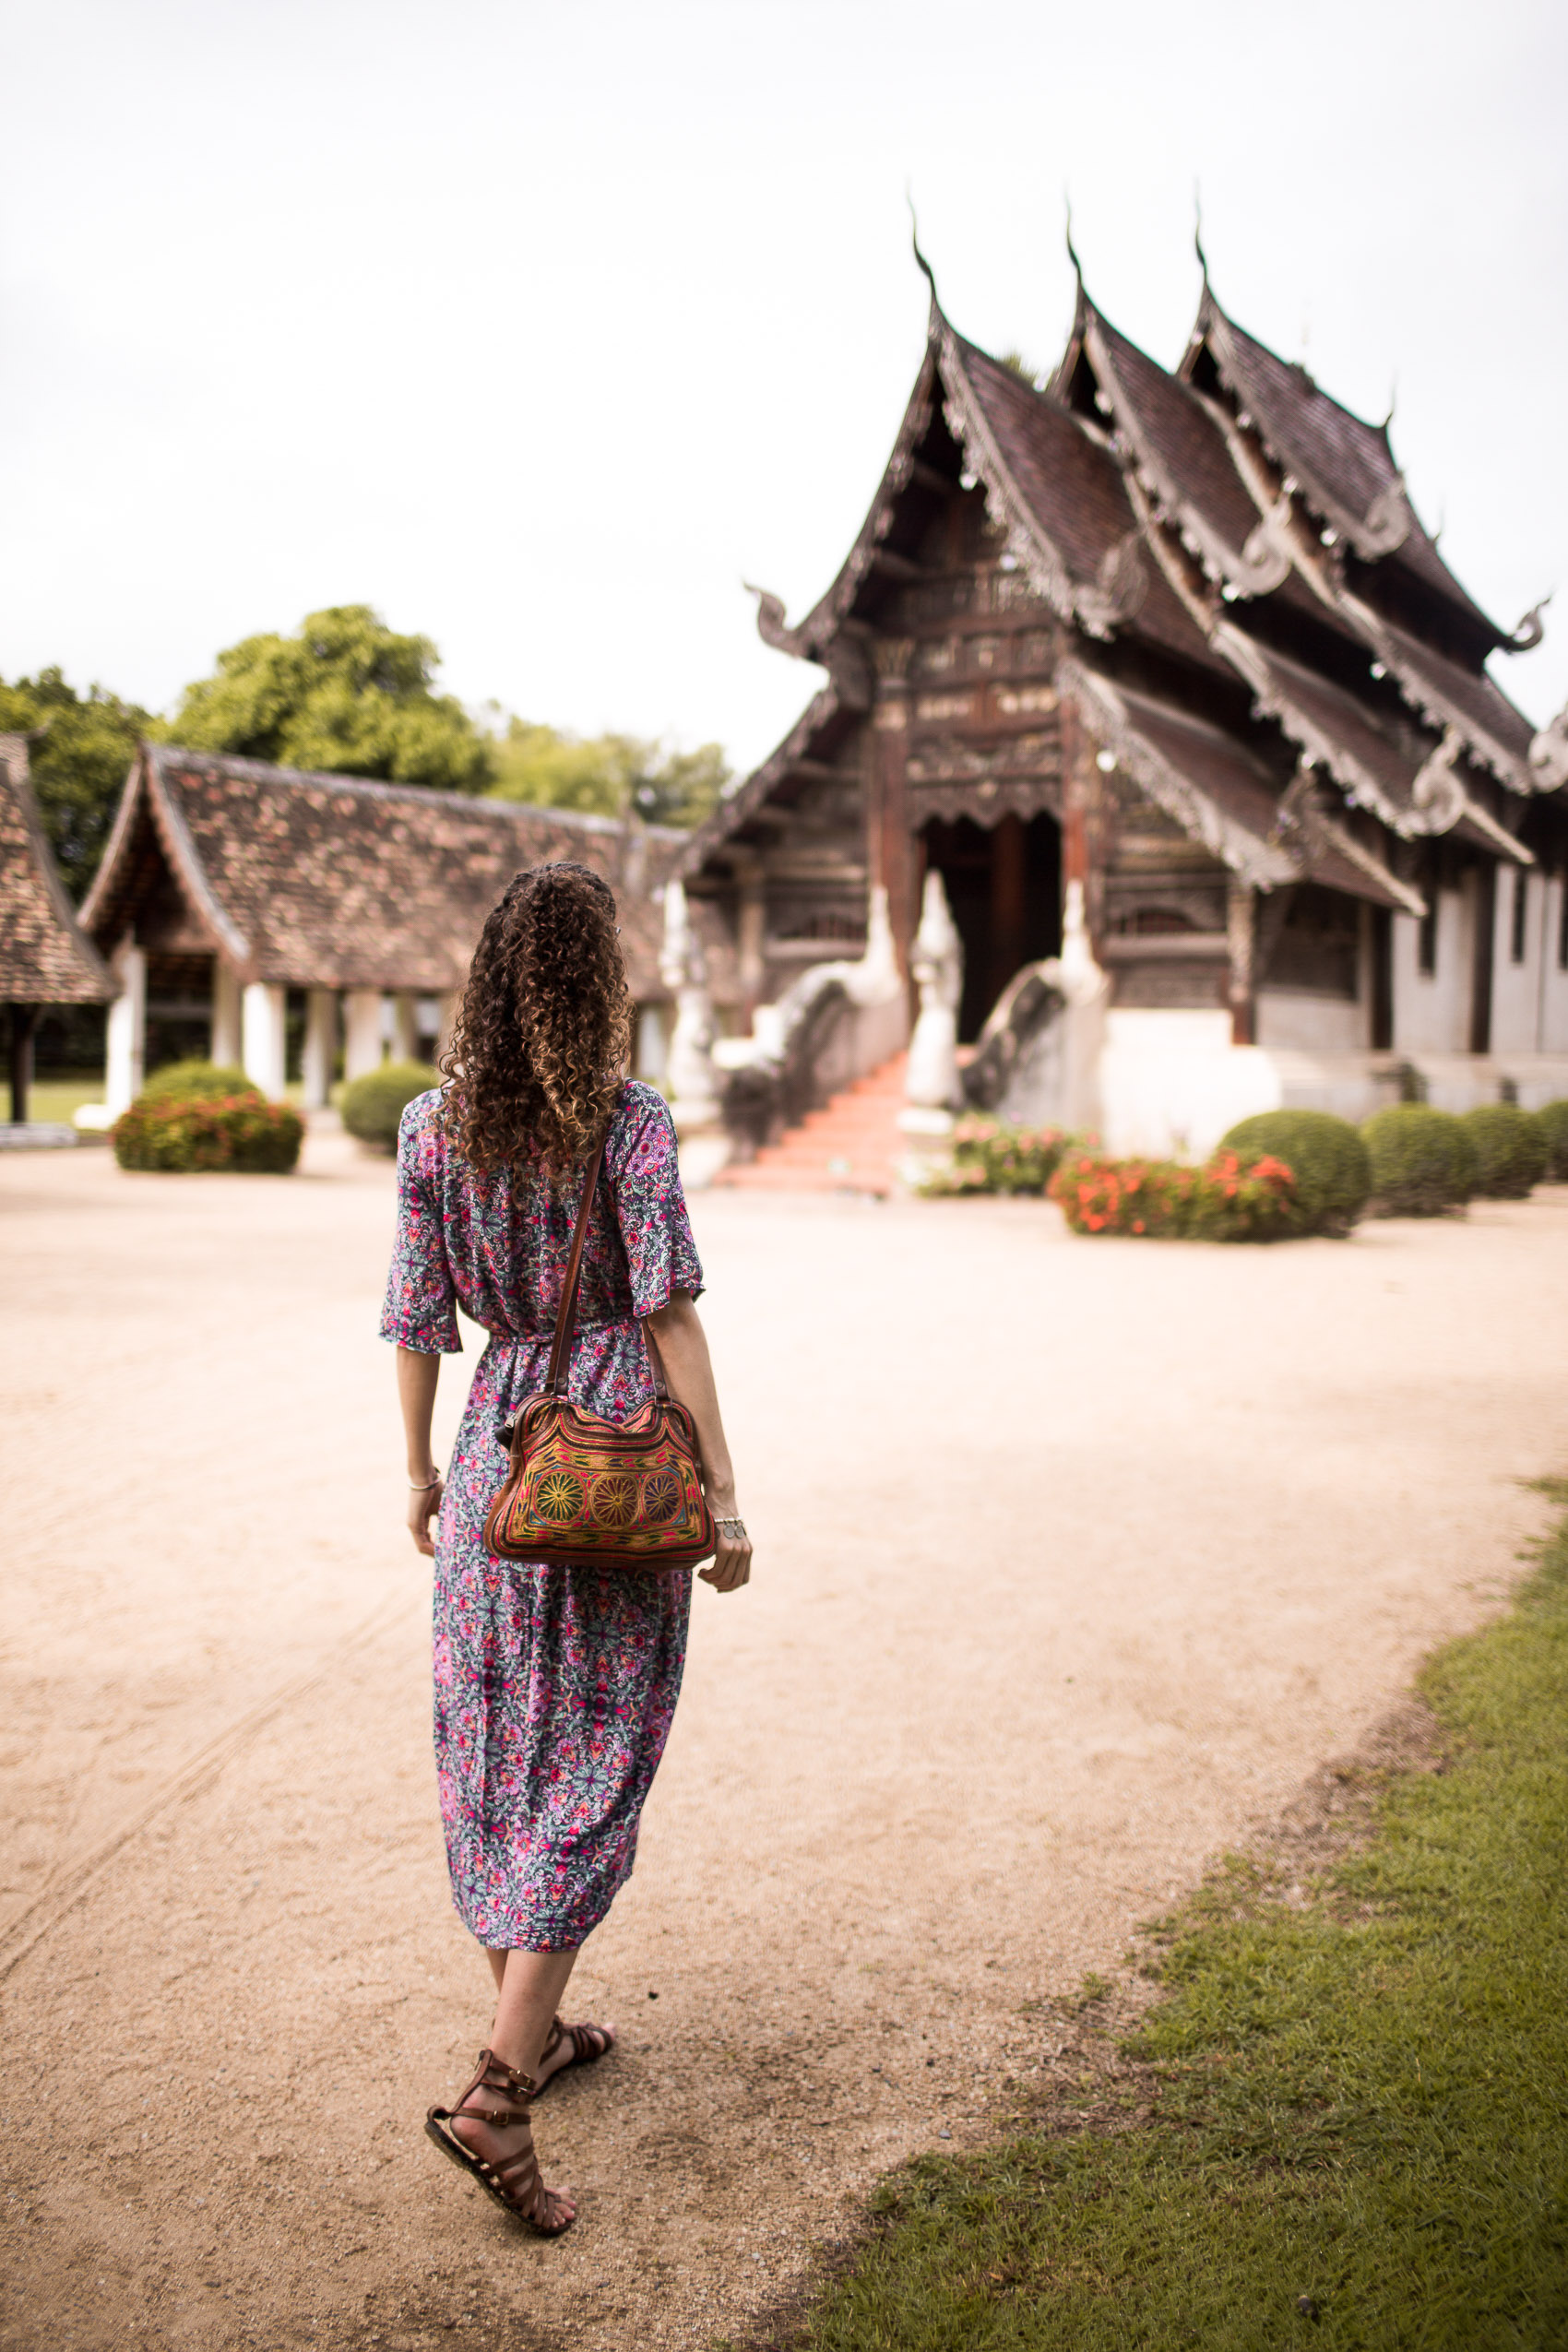 Chiang Mai Travel Guide